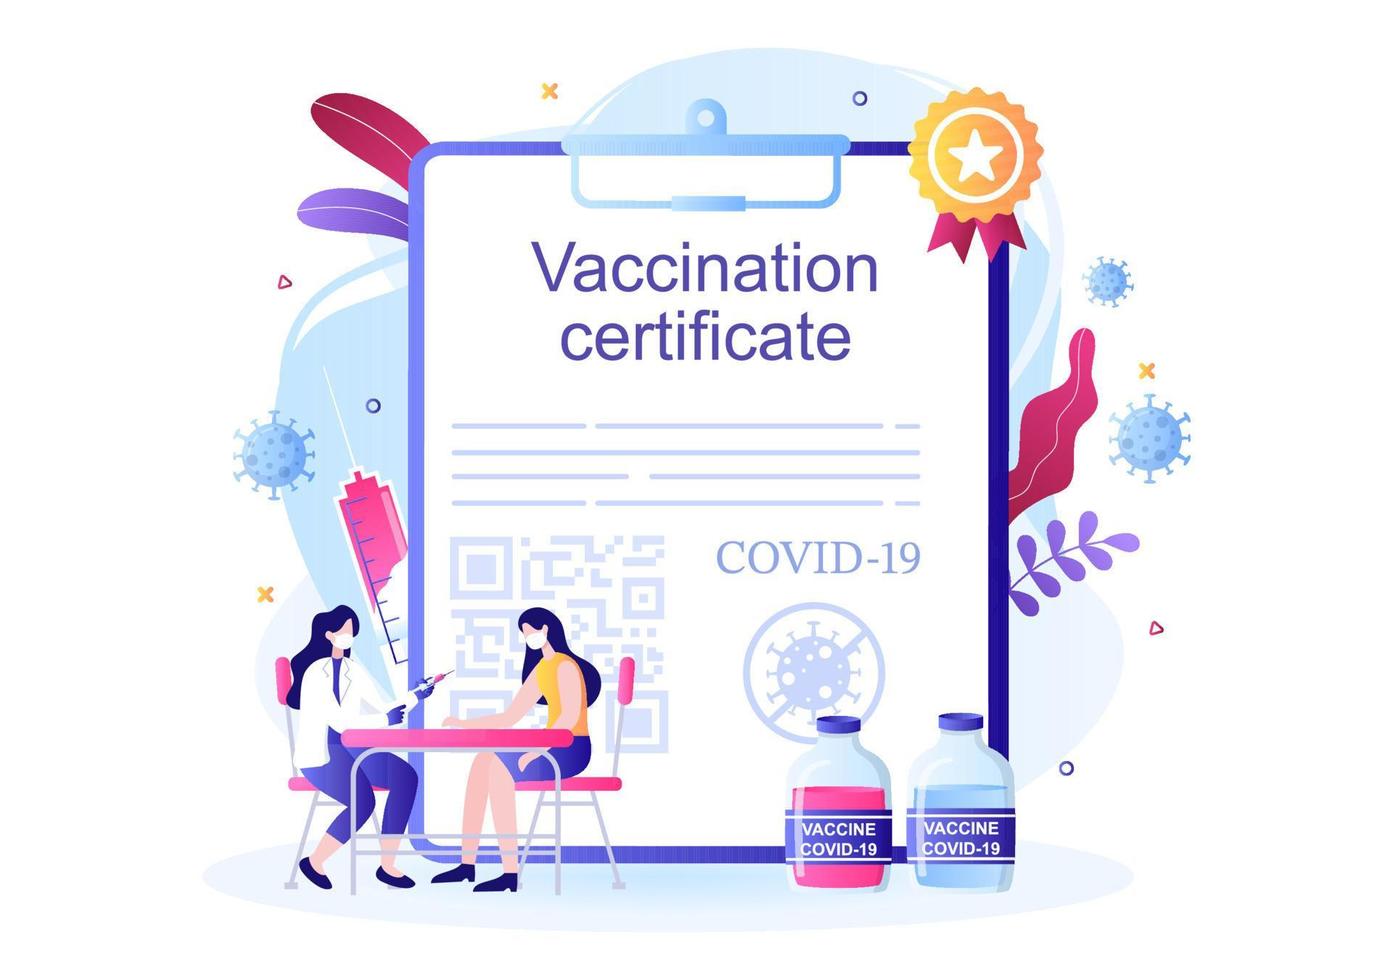 icona del certificato di vaccinazione covid-19 con un documento come prova di essere vaccinato sotto forma di carta o scansione su uno smartphone. illustrazione vettoriale di sfondo